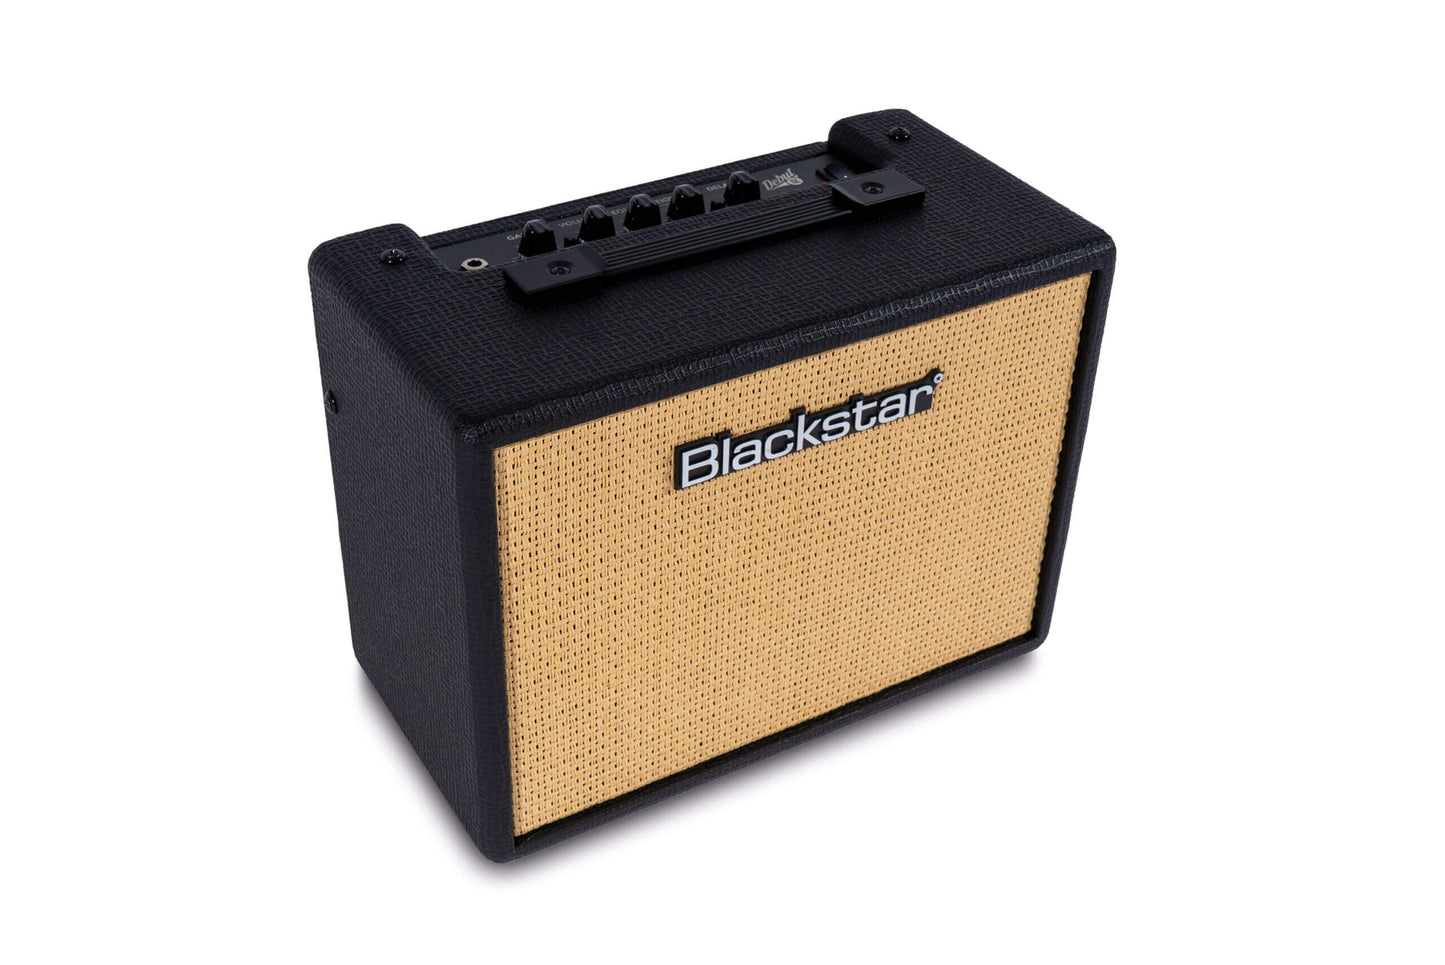 Blackstar Debut 15 Watt Guitar Amplifier Black